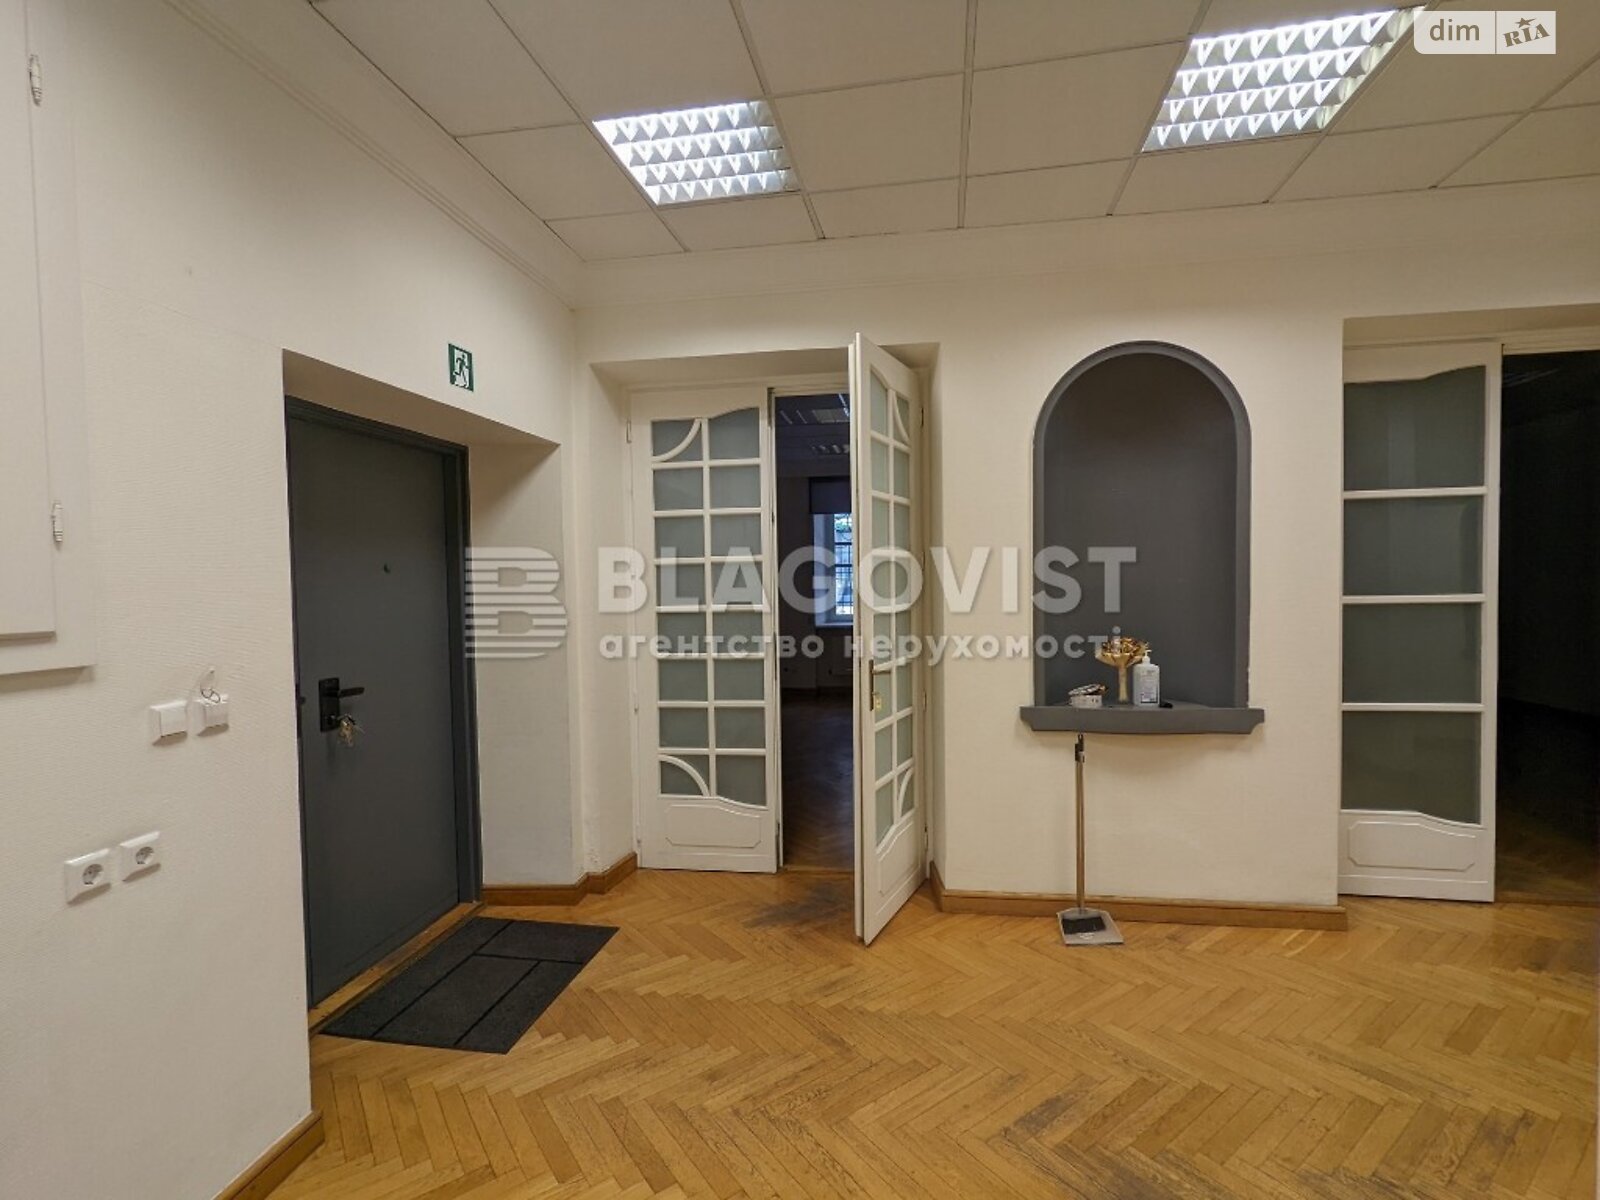 Офисное помещение на 216 кв.м. в Киеве фото 1